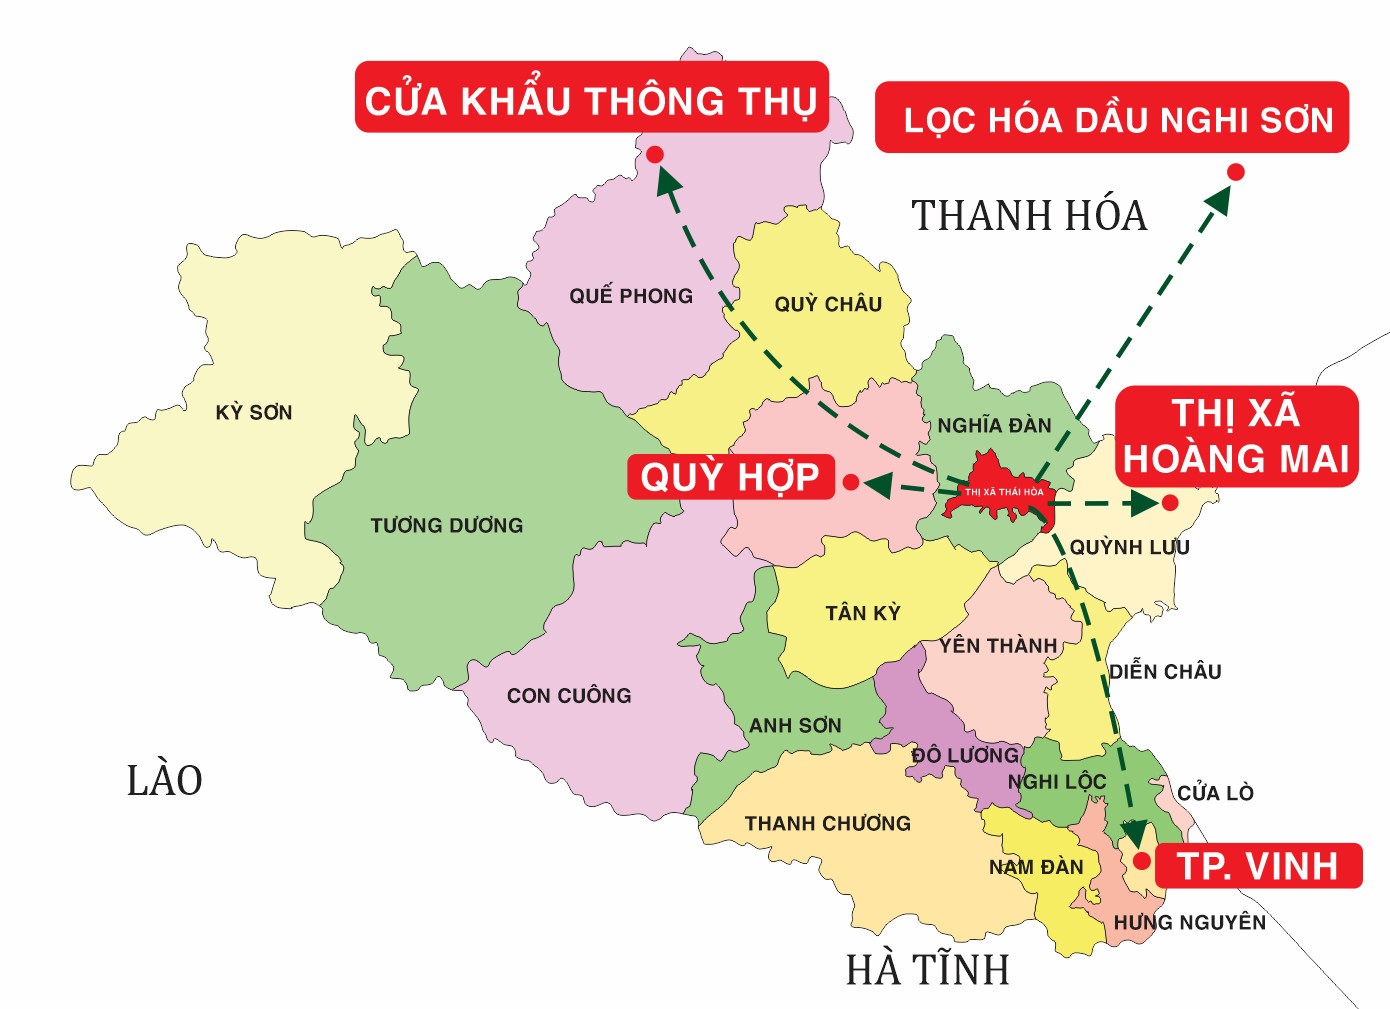 Vị trí trung tâm kết nối giao thương, Thái Hòa khẳng định tiềm năng phát triển kinh tế - chính trị - xã hội của địa phương trong chuỗi các tổ hợp mua sắm, logictics, du lịch của địa phương.